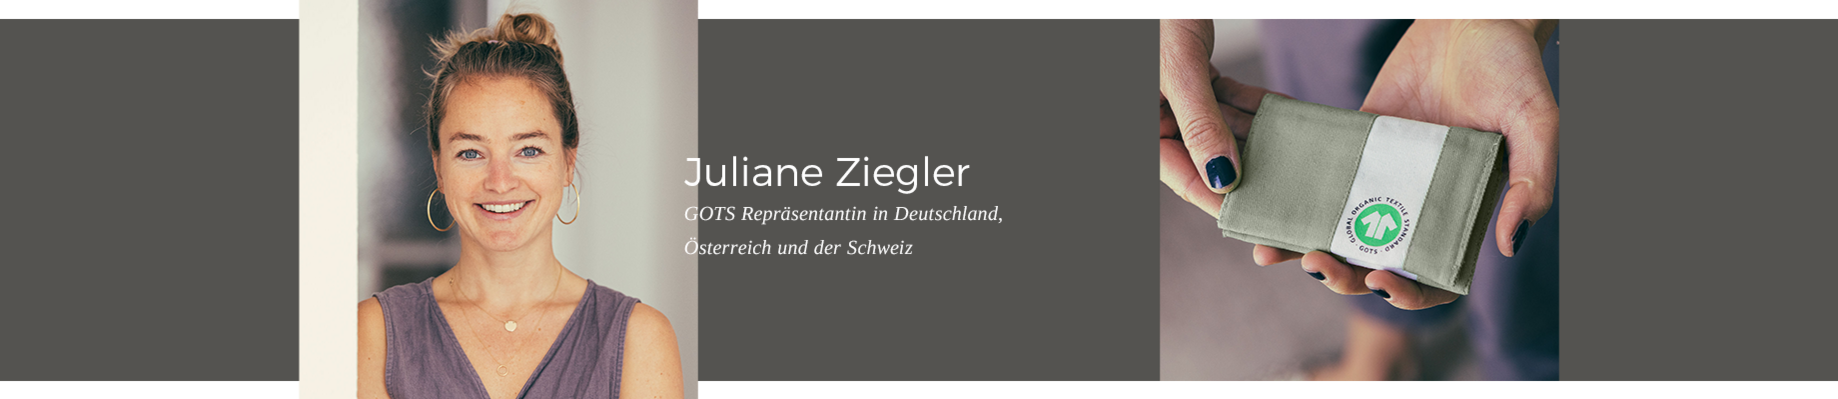 Juliane Ziegler - GOTS-Repräsentantin in Deutschland, Österreich und der Schweiz.